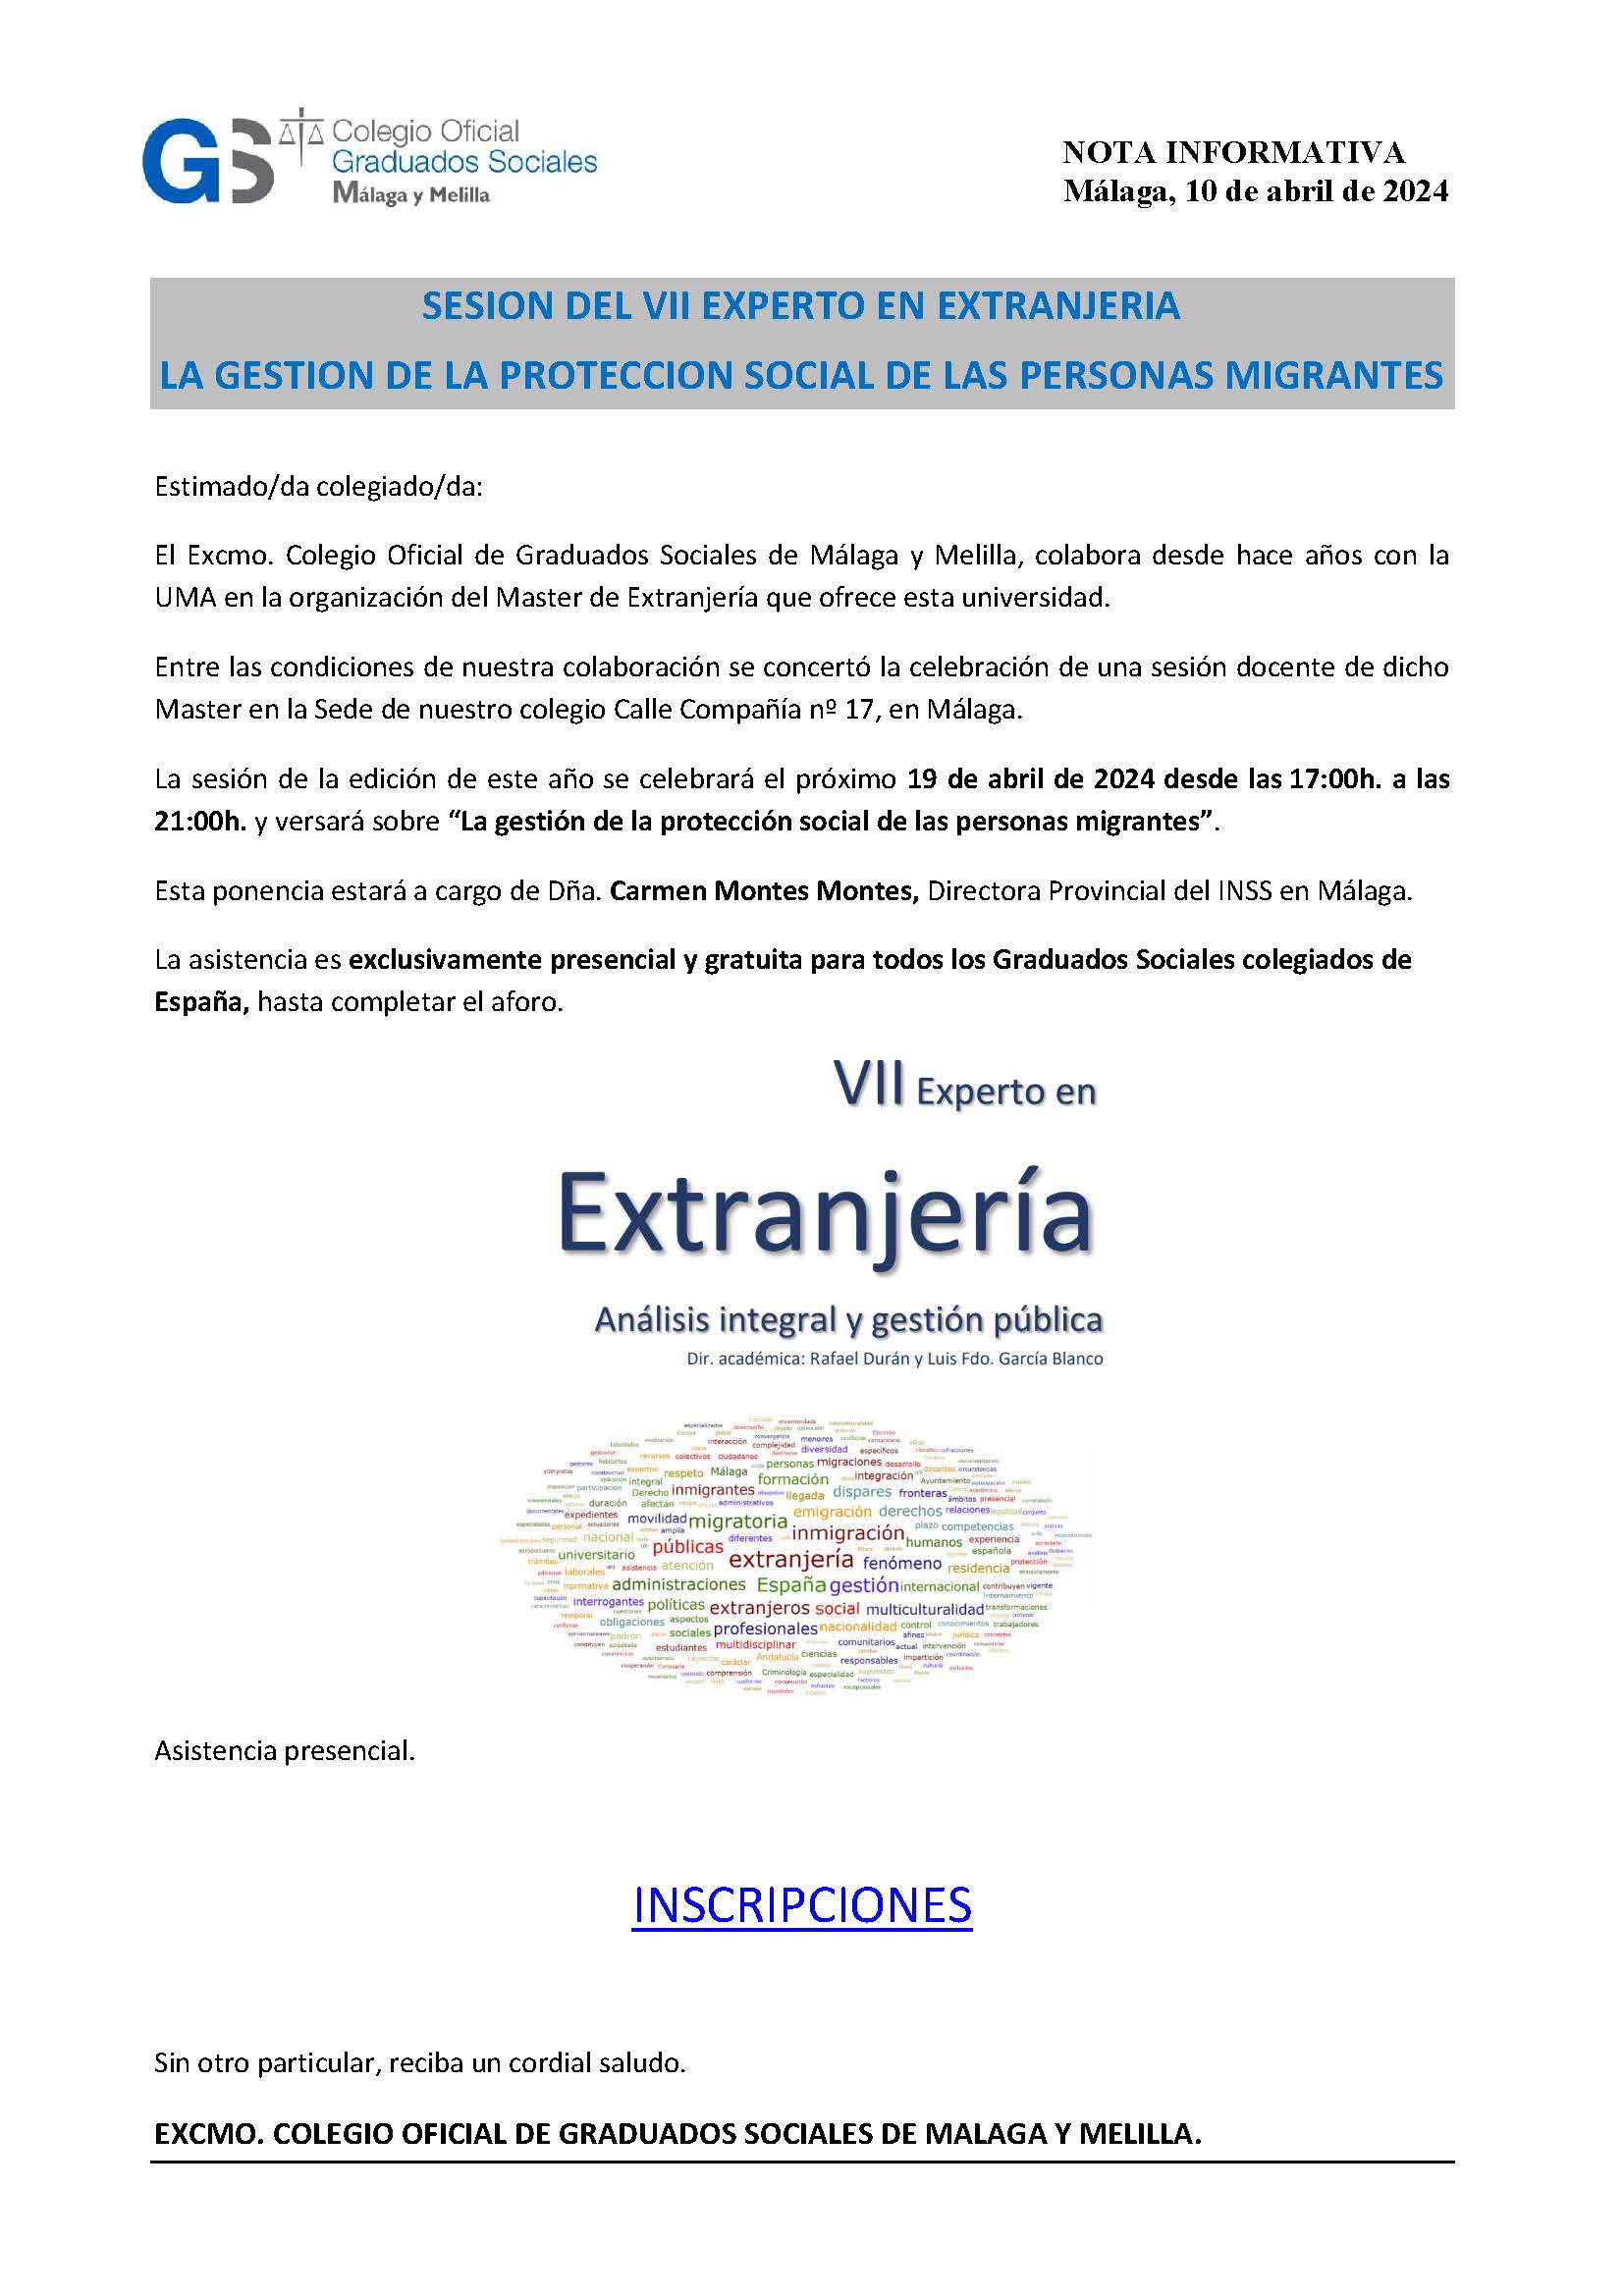 NOTA INFORMATIVA VII EXPERTO EN EXTRANJERIA LA GESTION DE LA PROTECCION SOCIAL DE LAS PERSONAS MIGRANTES